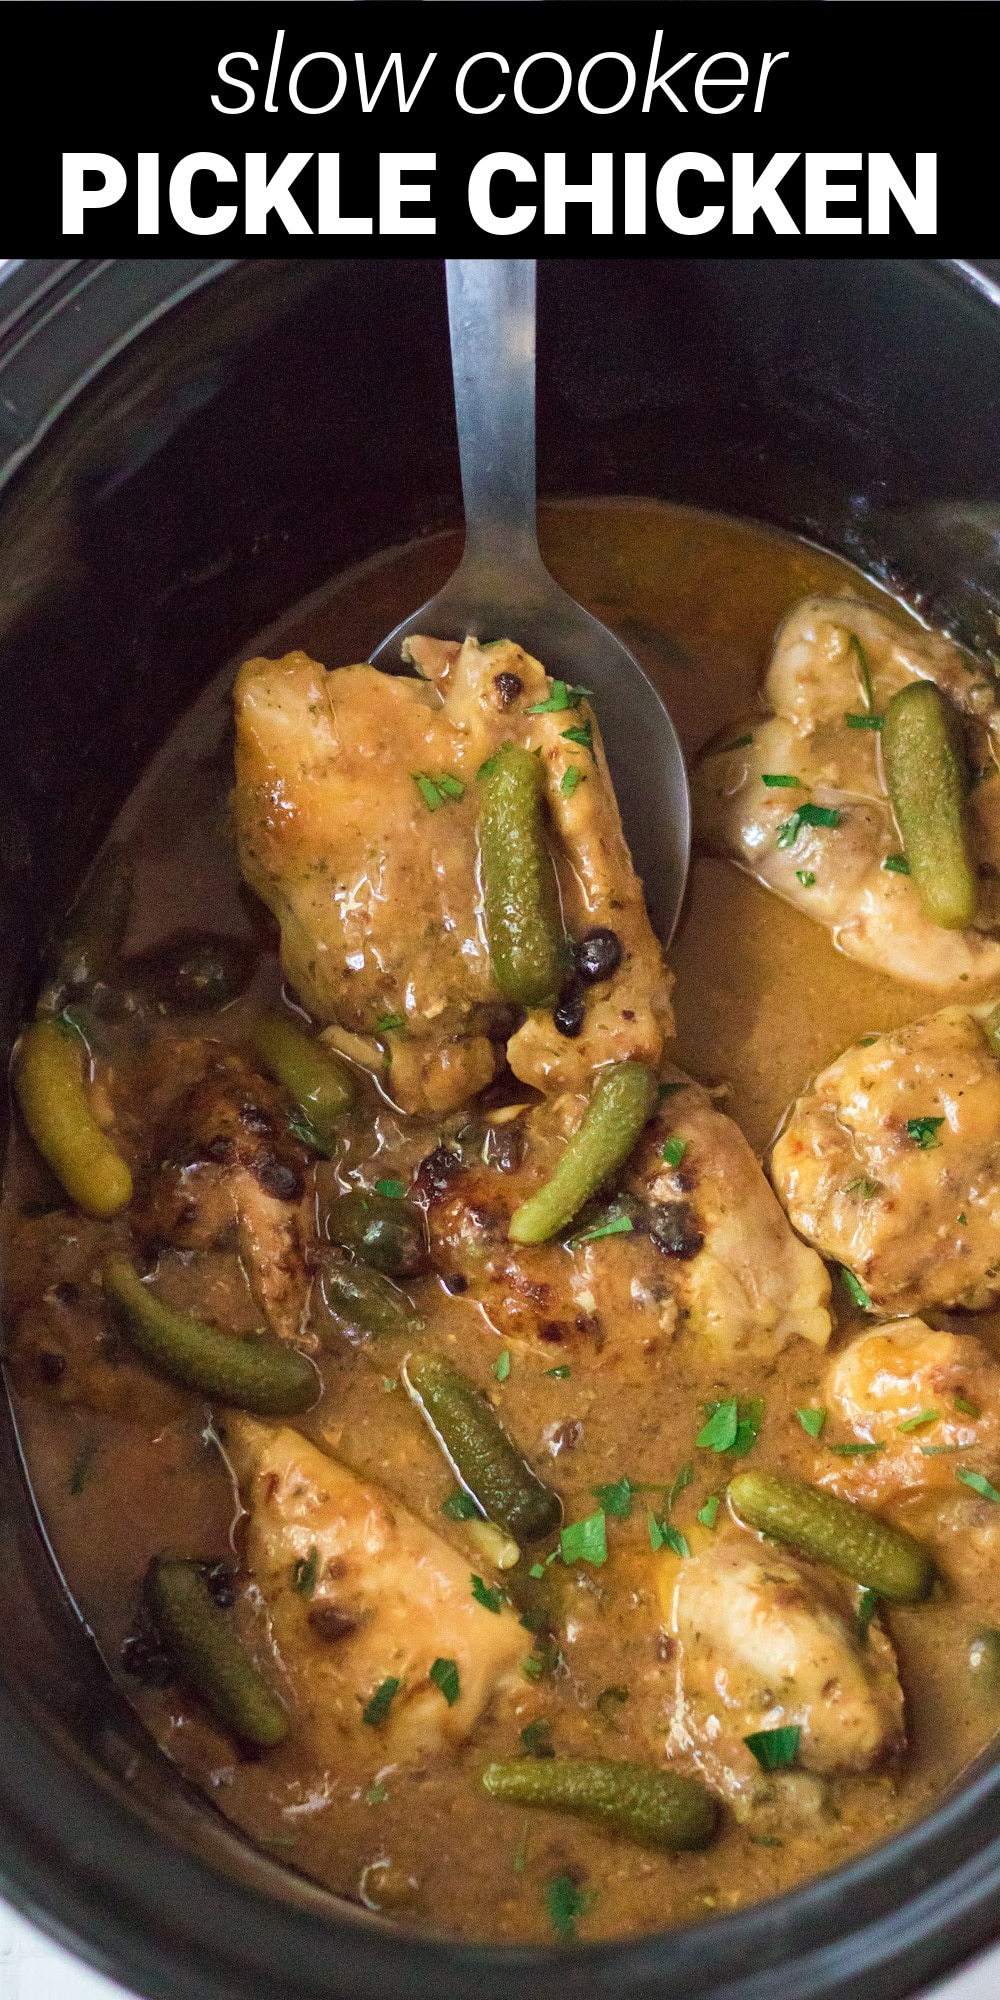 Pickles add amazing zesty flavor to this crockpot chicken dish!